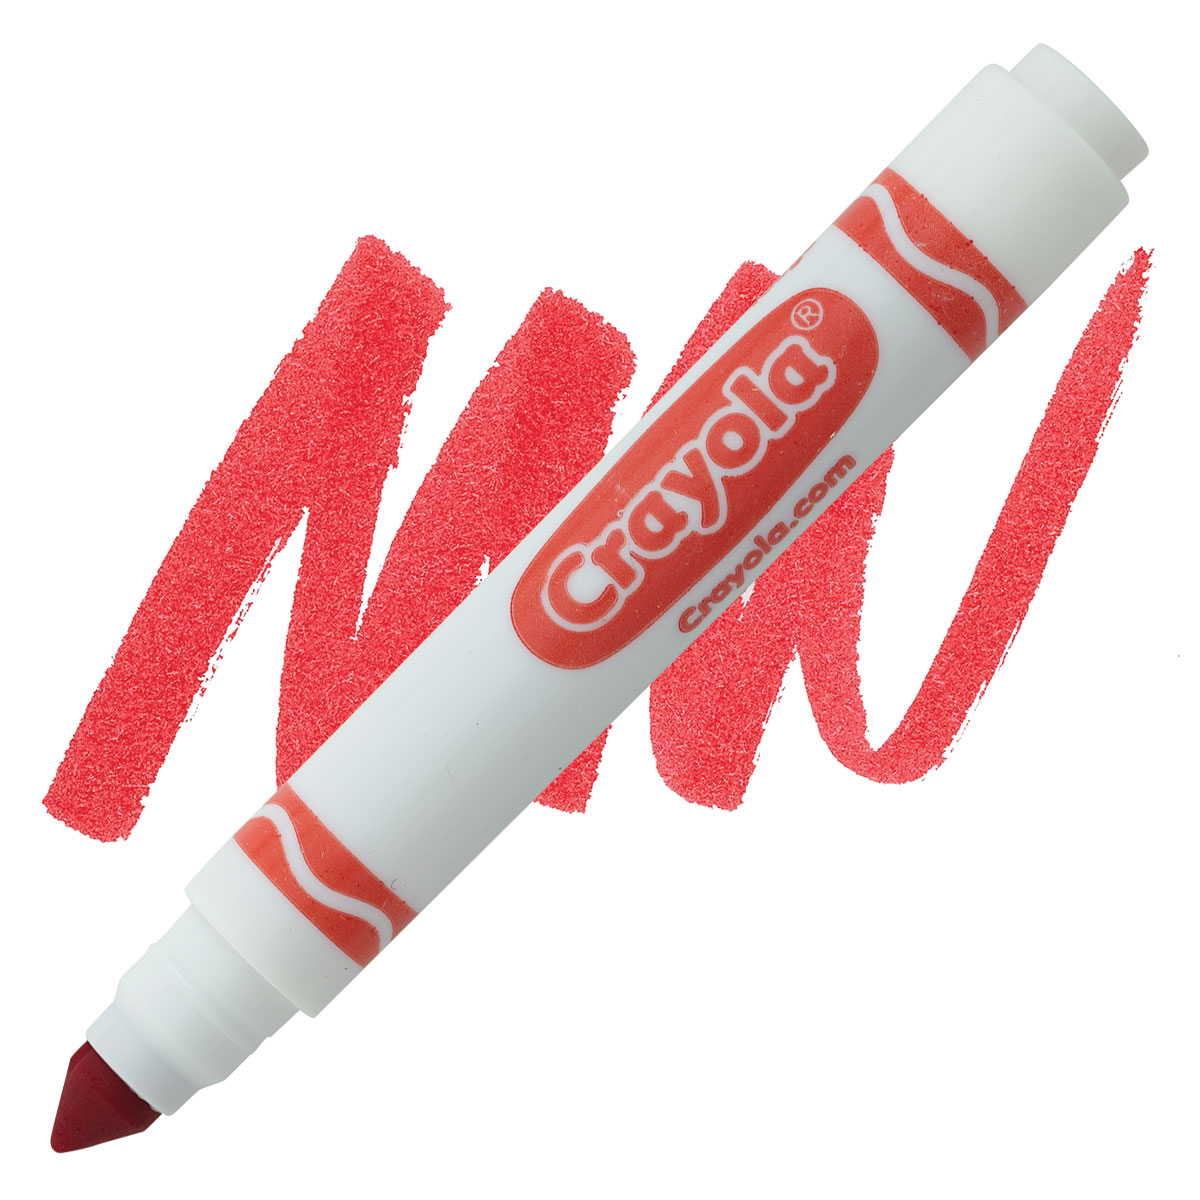 Red Crayola Broad Line Marker - Set of 5 or 10